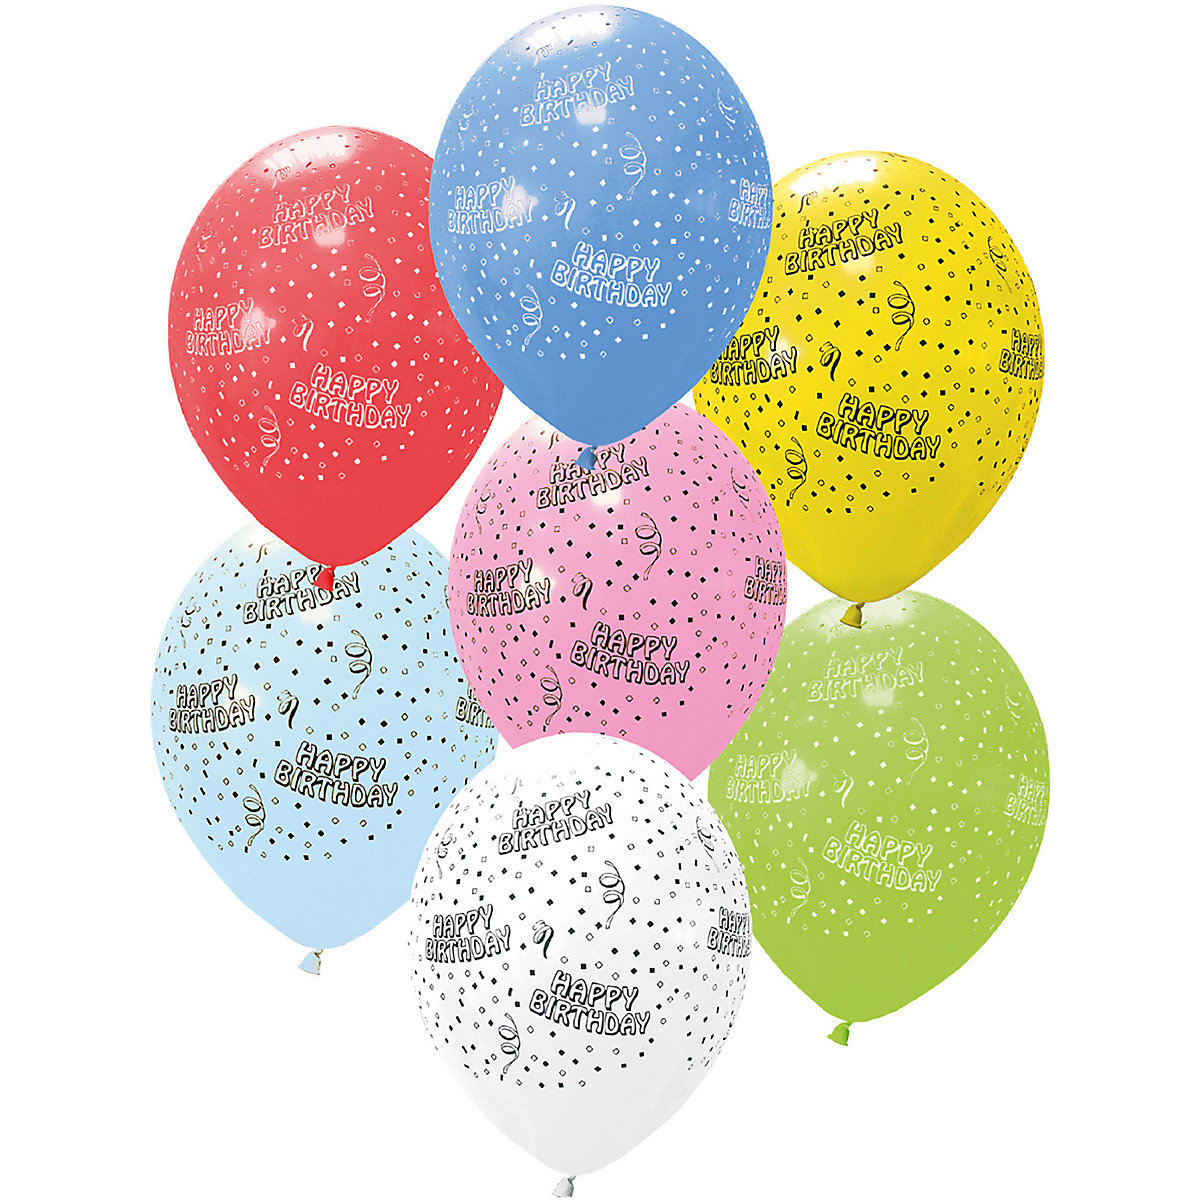 Procos Luftballons 28 cm Happy Birthday 6 Stück in verschiedenen Farben